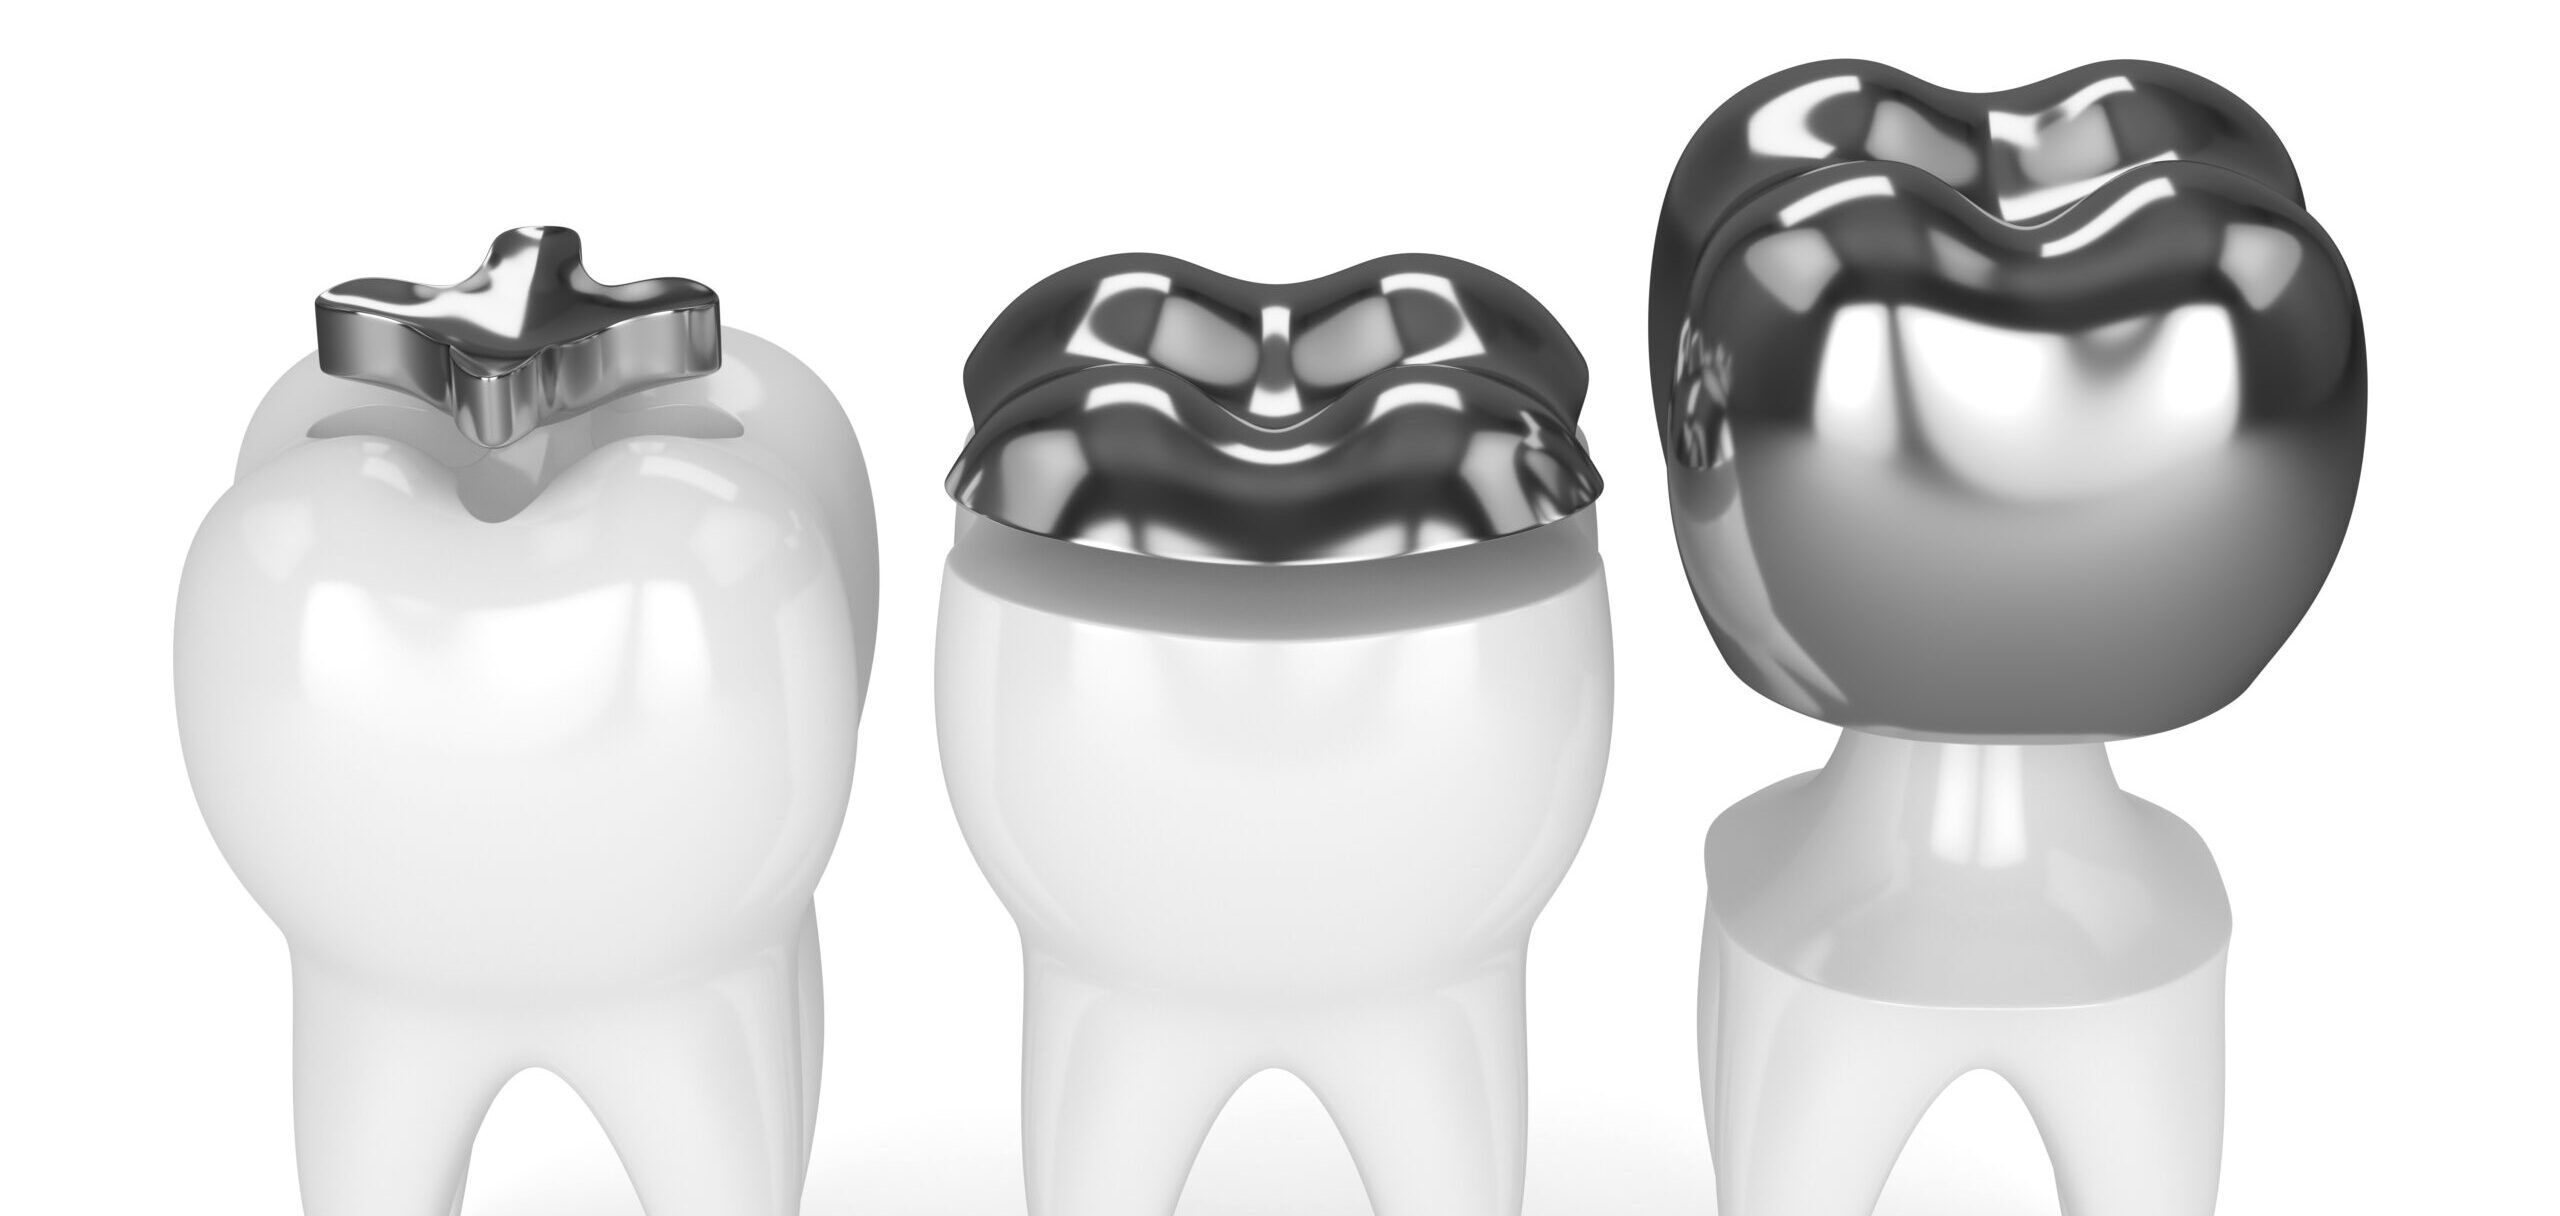 歯科治療で使われる金属の種類や特徴を解説